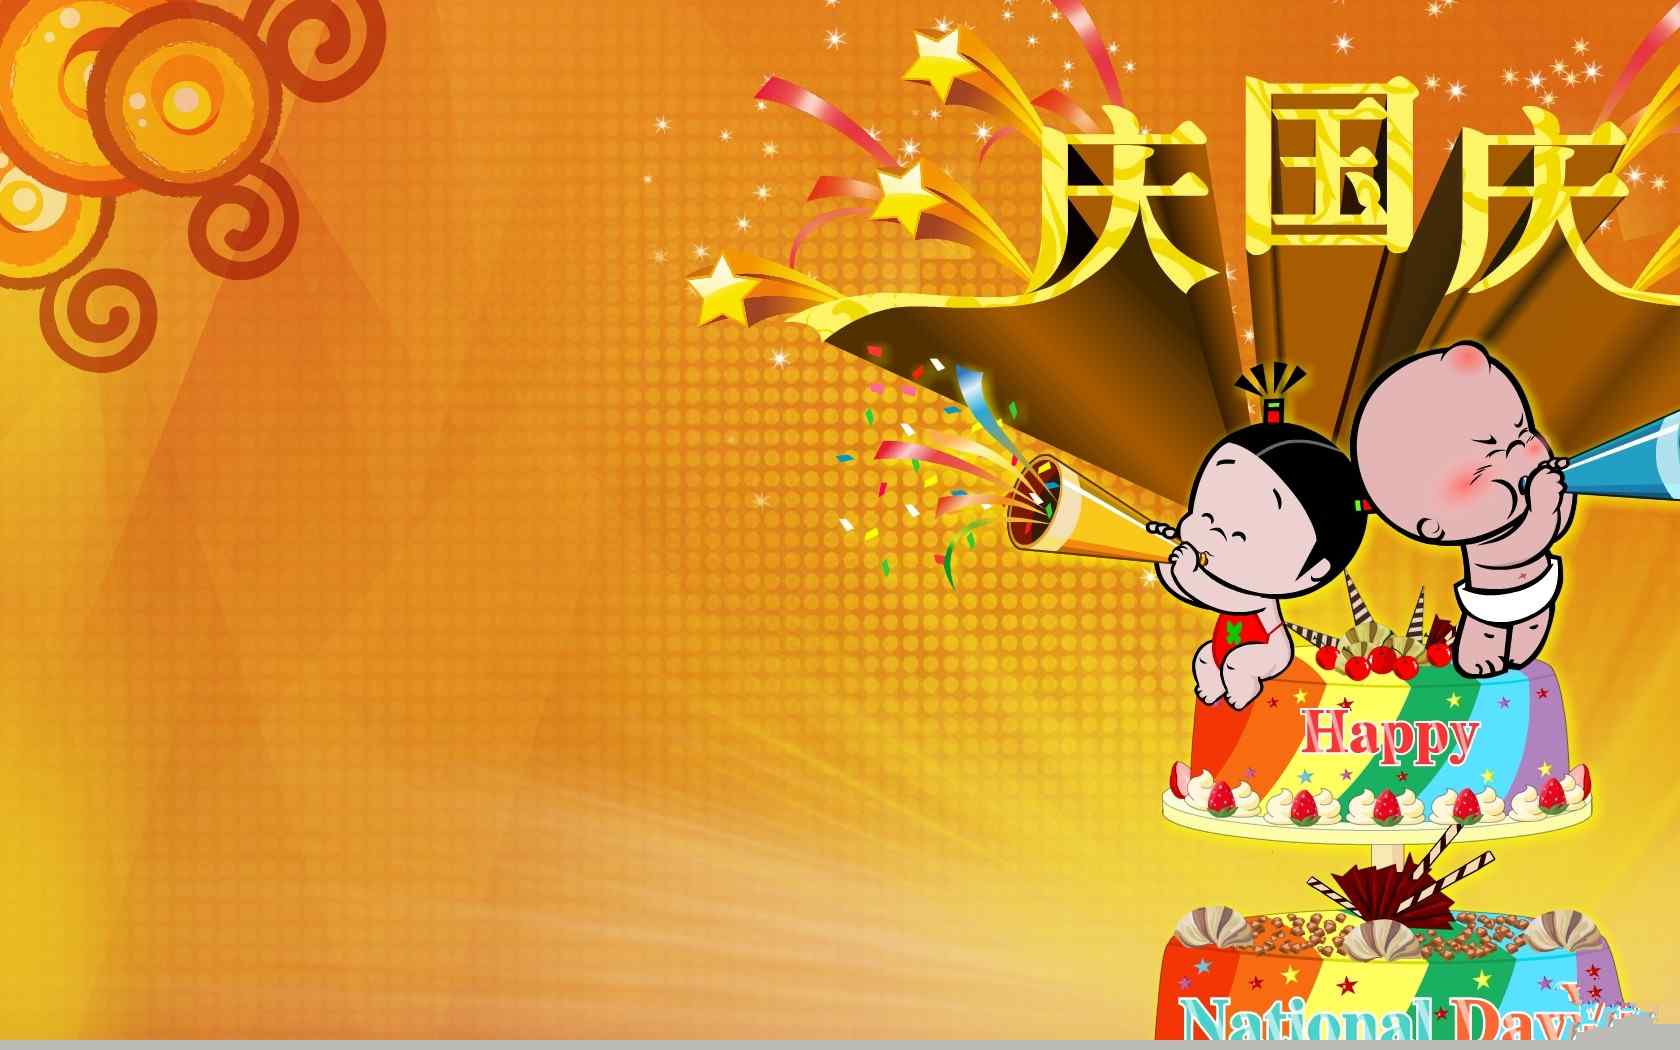 可爱卡通动漫十一国庆节设计电脑桌面壁纸图片下载